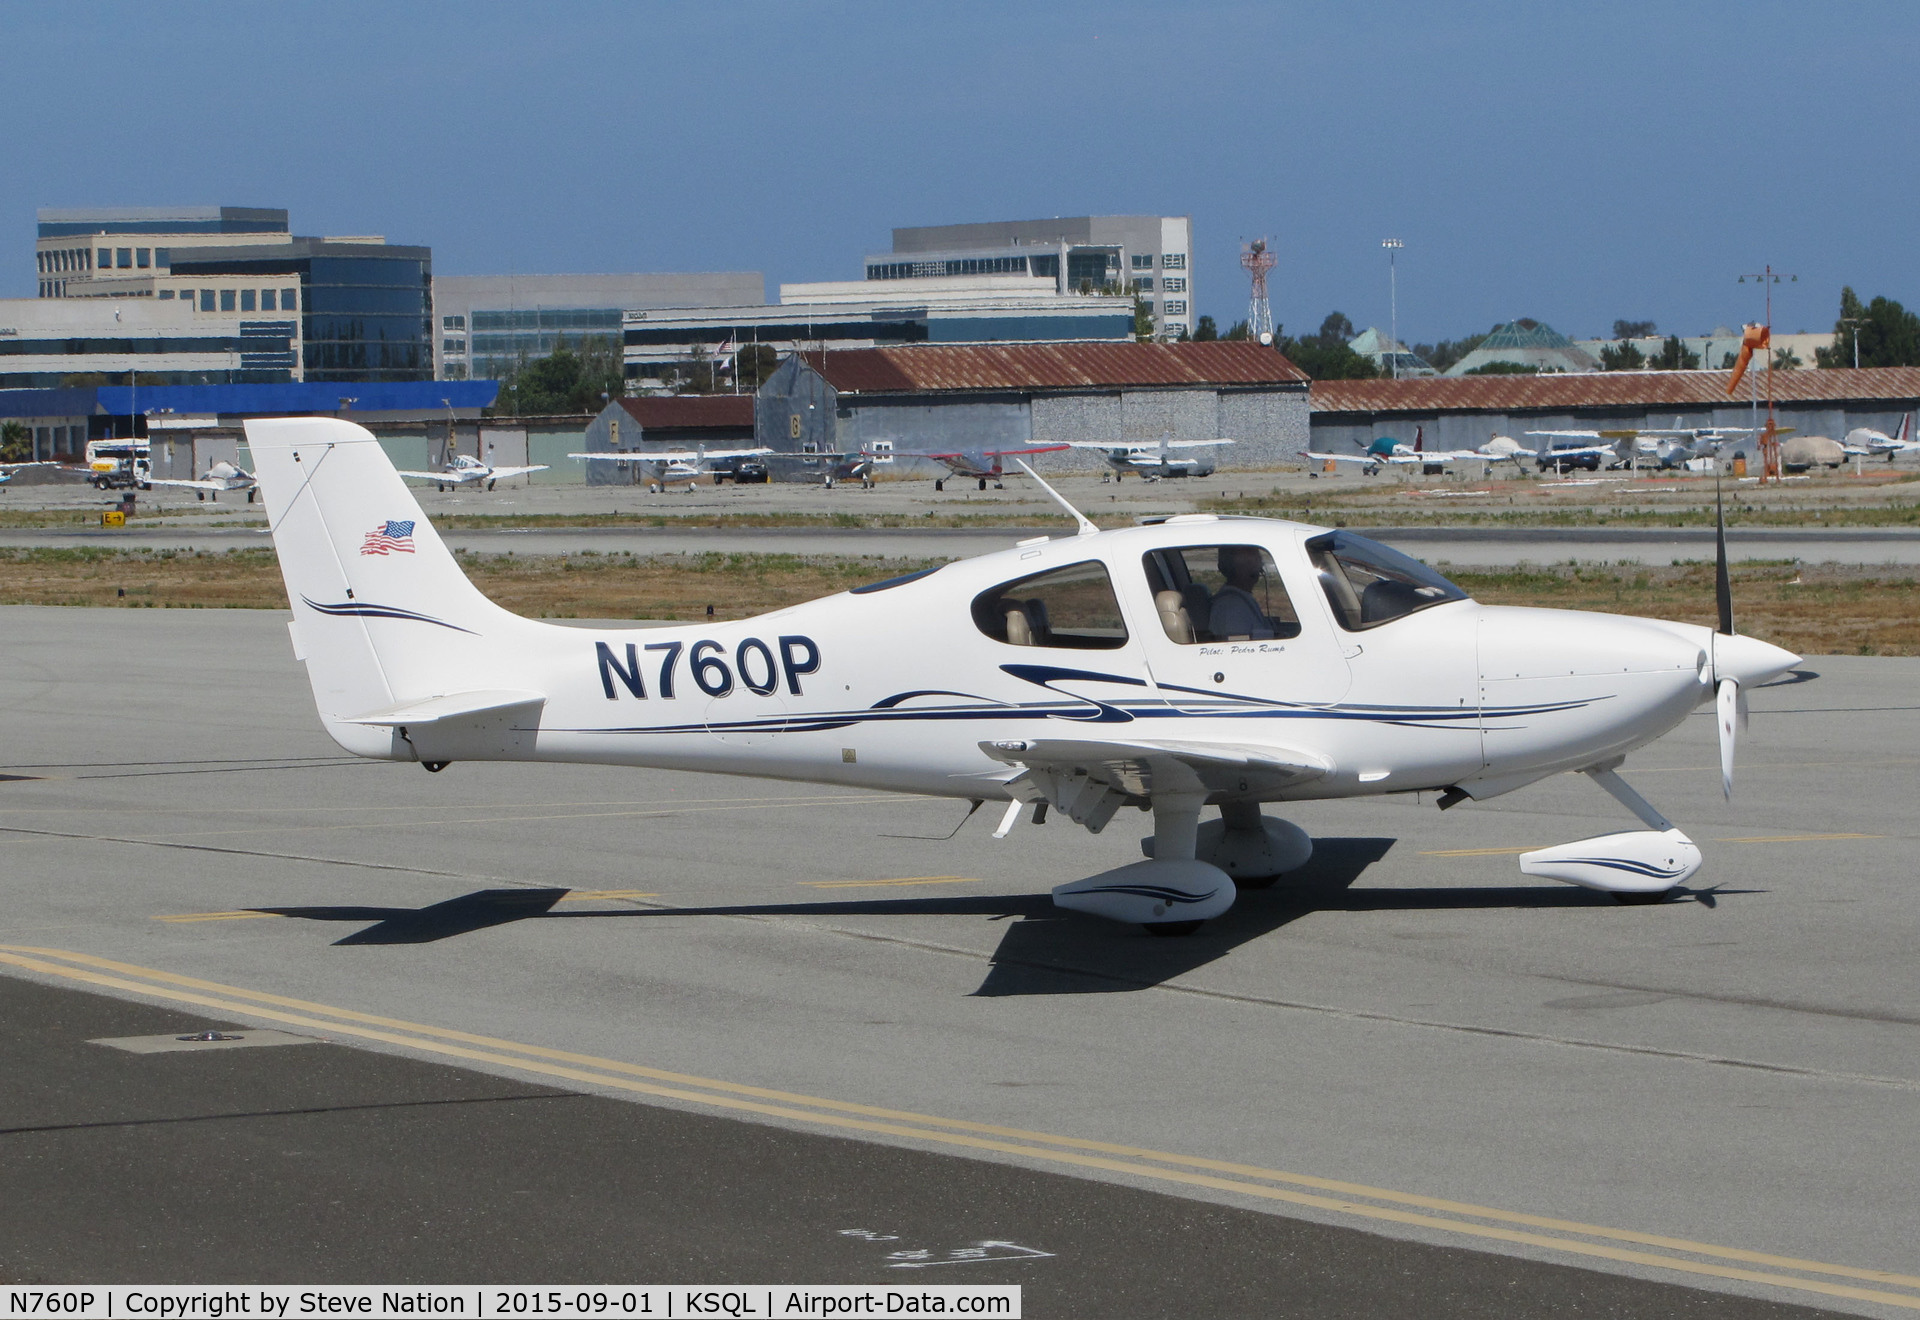 N760P, 2004 Cirrus SR22 C/N 0988, Locally-based 2004 Cirrus SR22 doing final checklist @ San Carlos Airport, CA